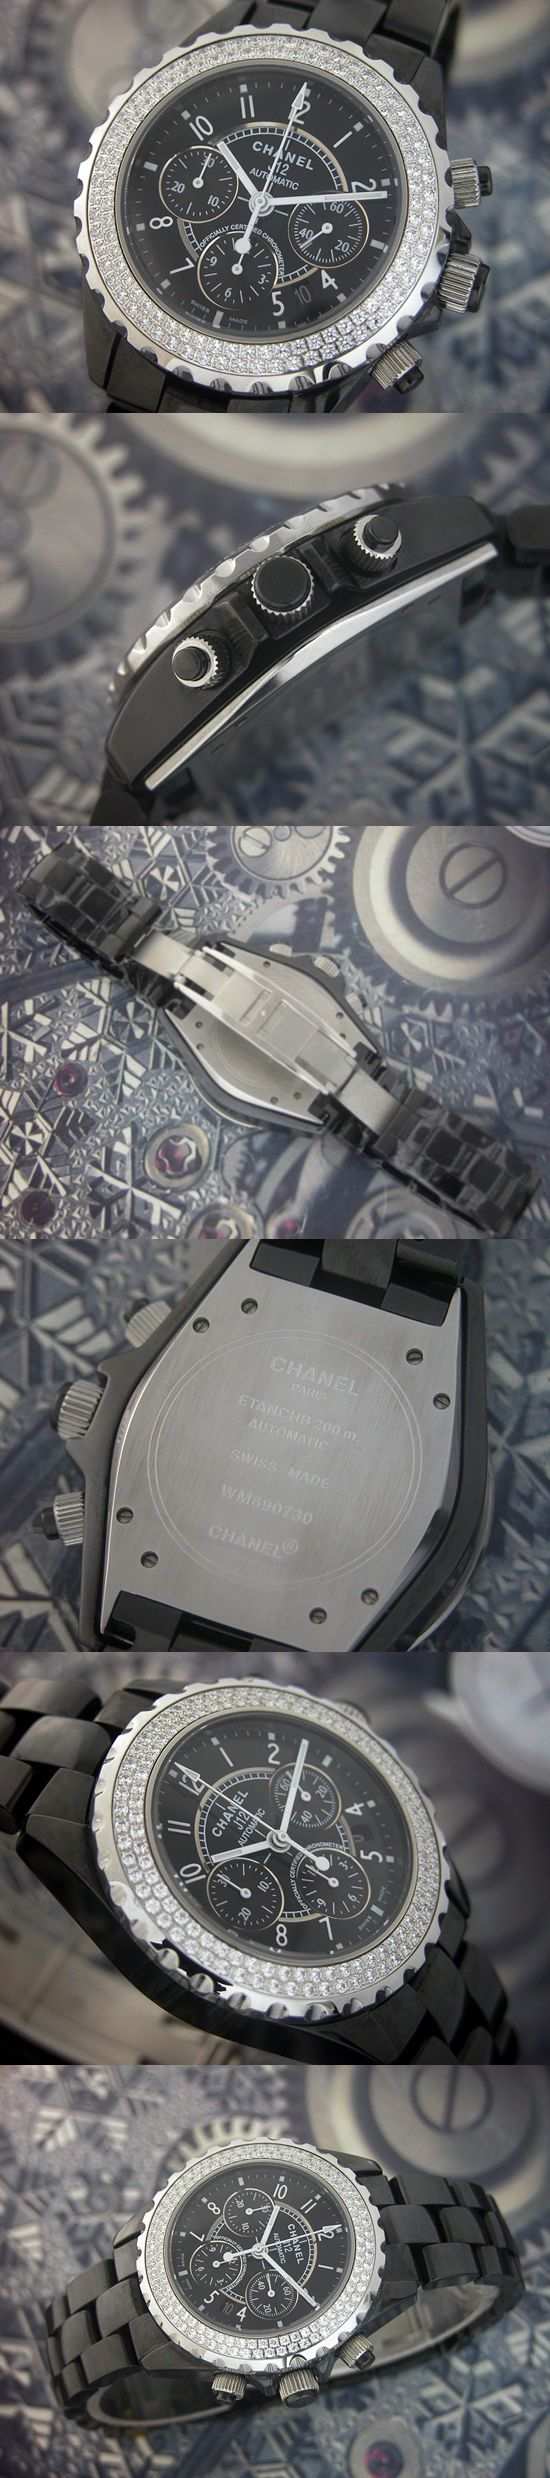 おしゃれなブランド時計がシャネル-CHANEL-H1009-J12-男性用を提供します.